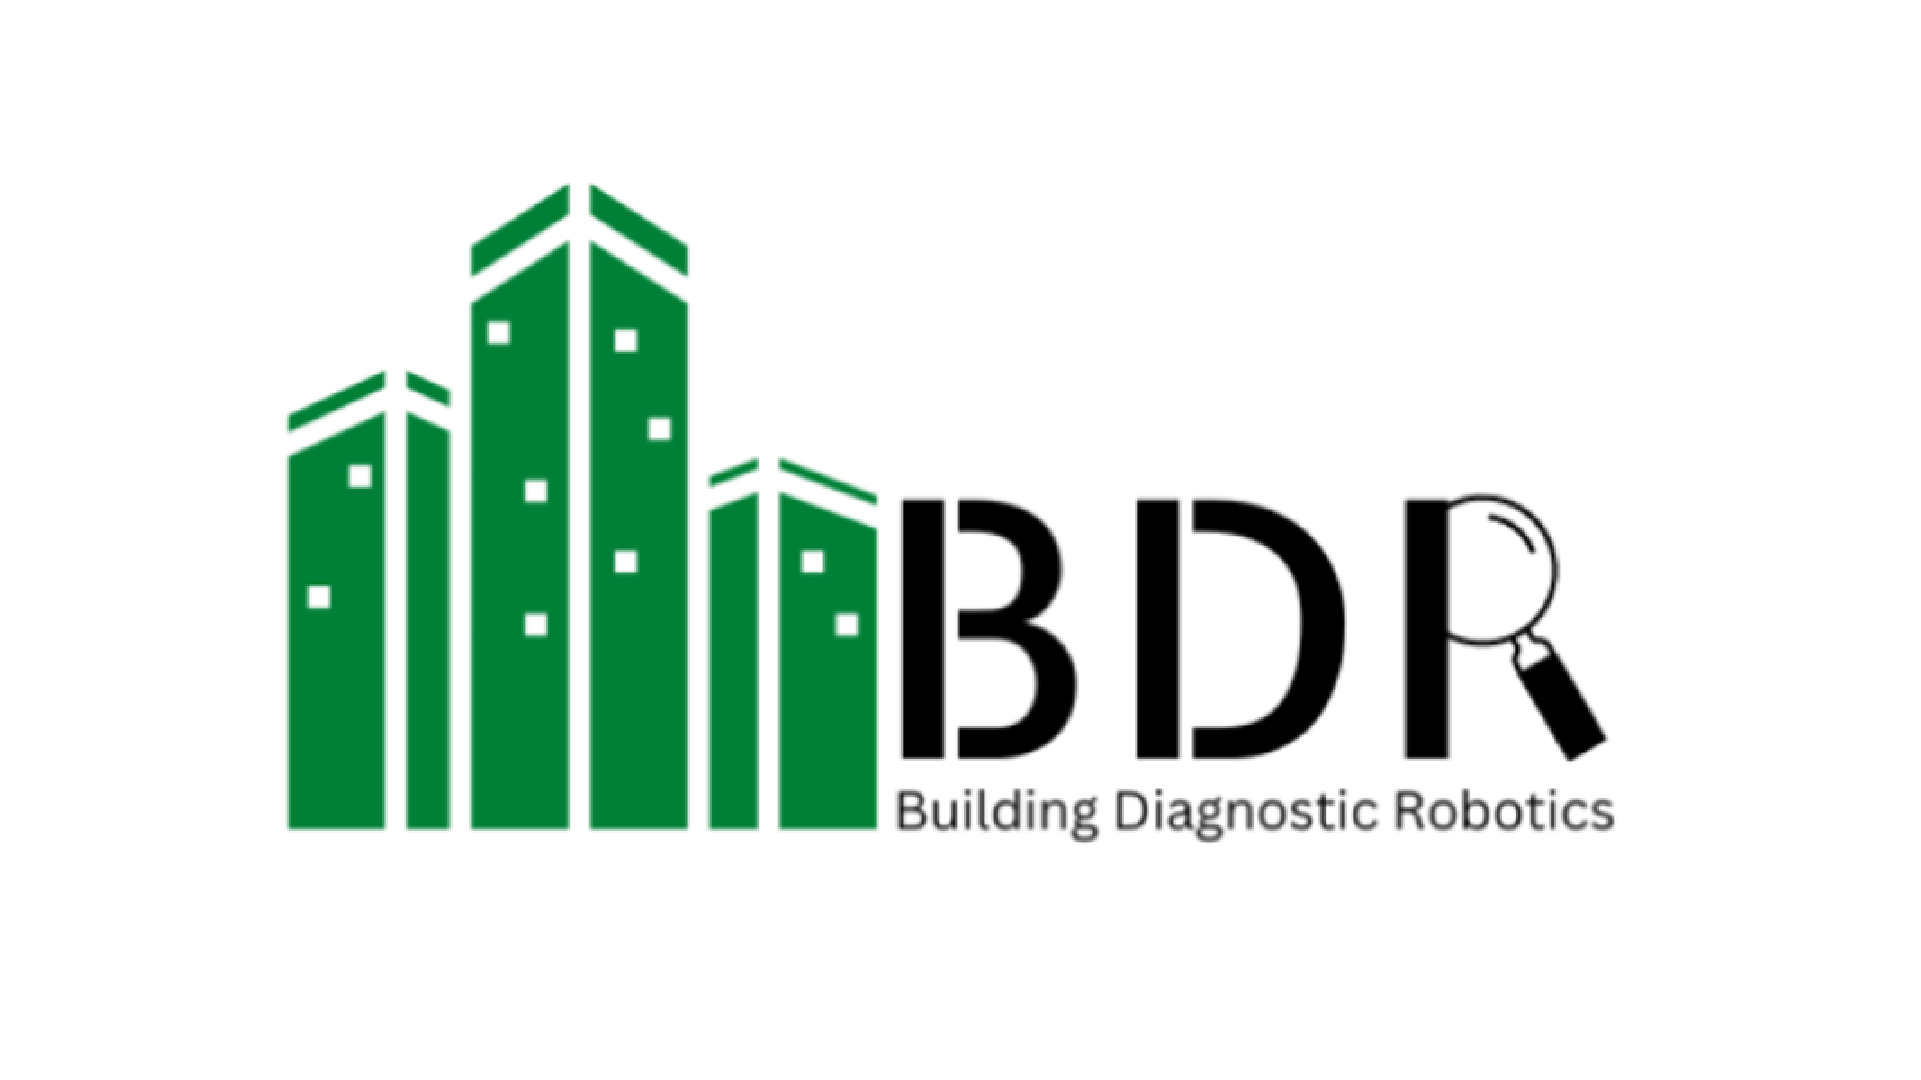 Building Diagnostic Robotics